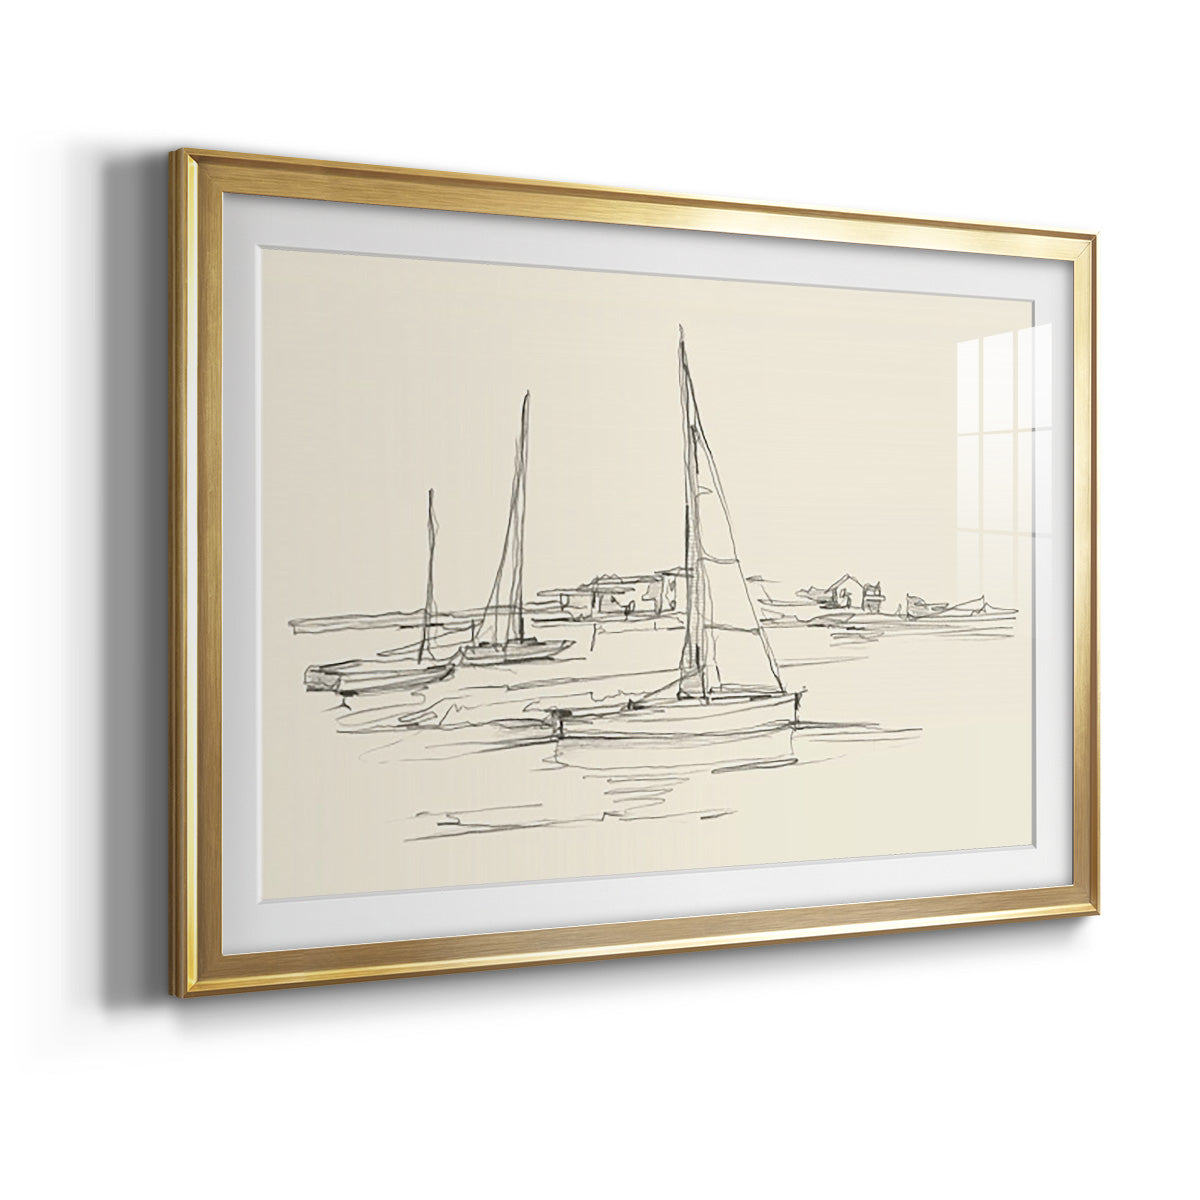 Coastal Contour Sketch I Premium Framed Print - Ready to Hang